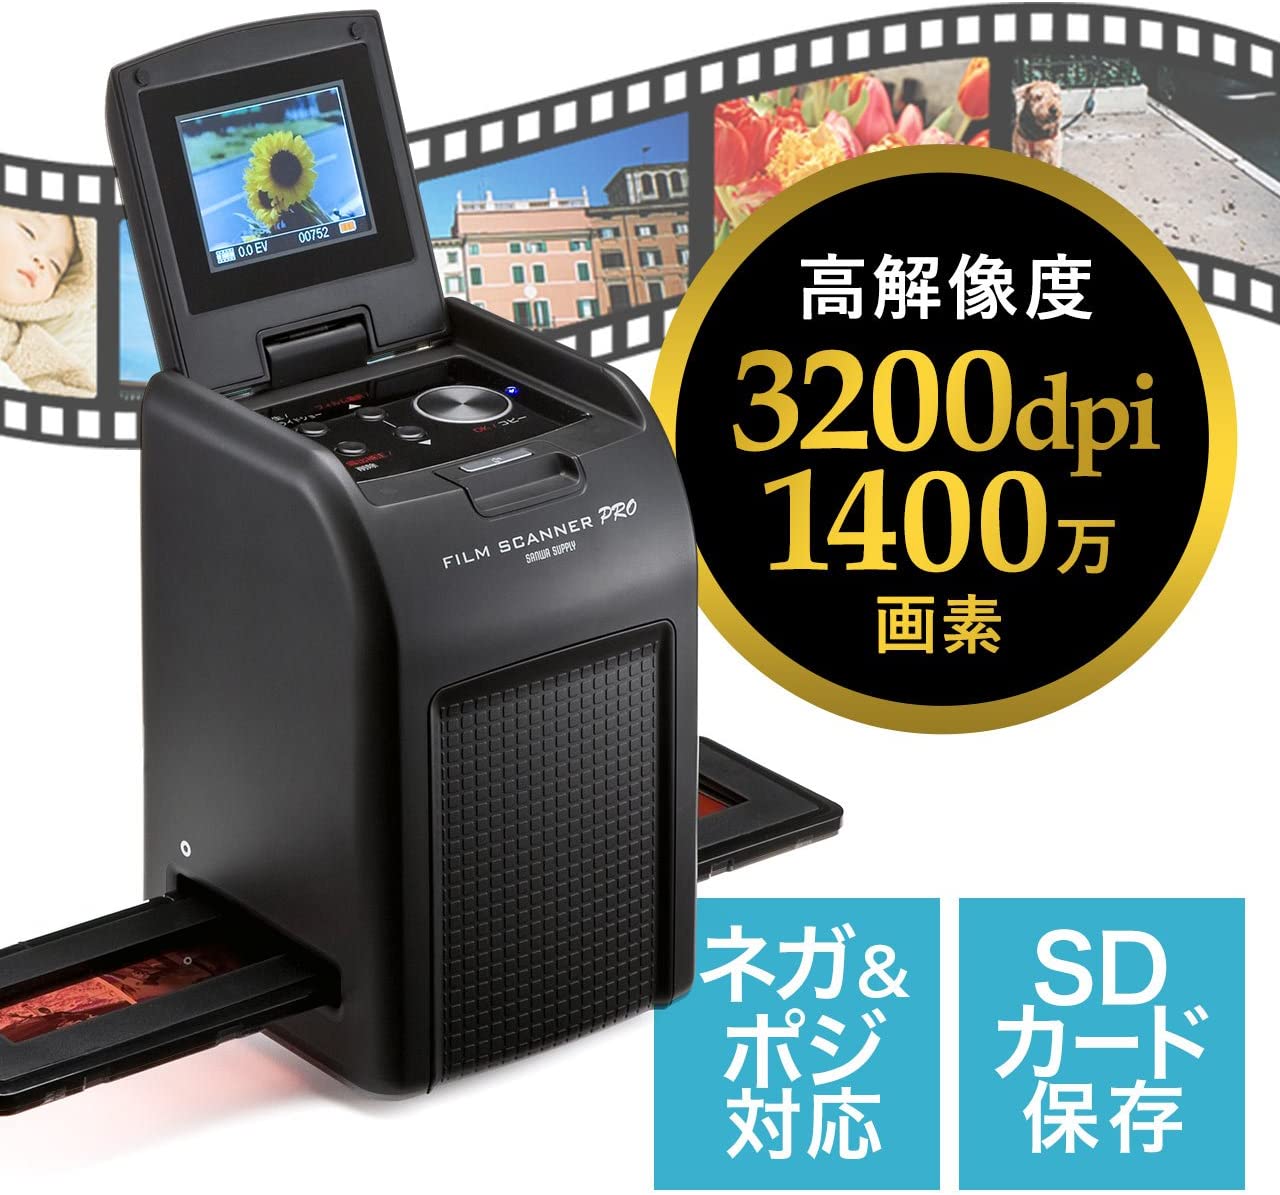 サンワサプライフィルムスキャナー35mmフィルム対応 400-SCN024 